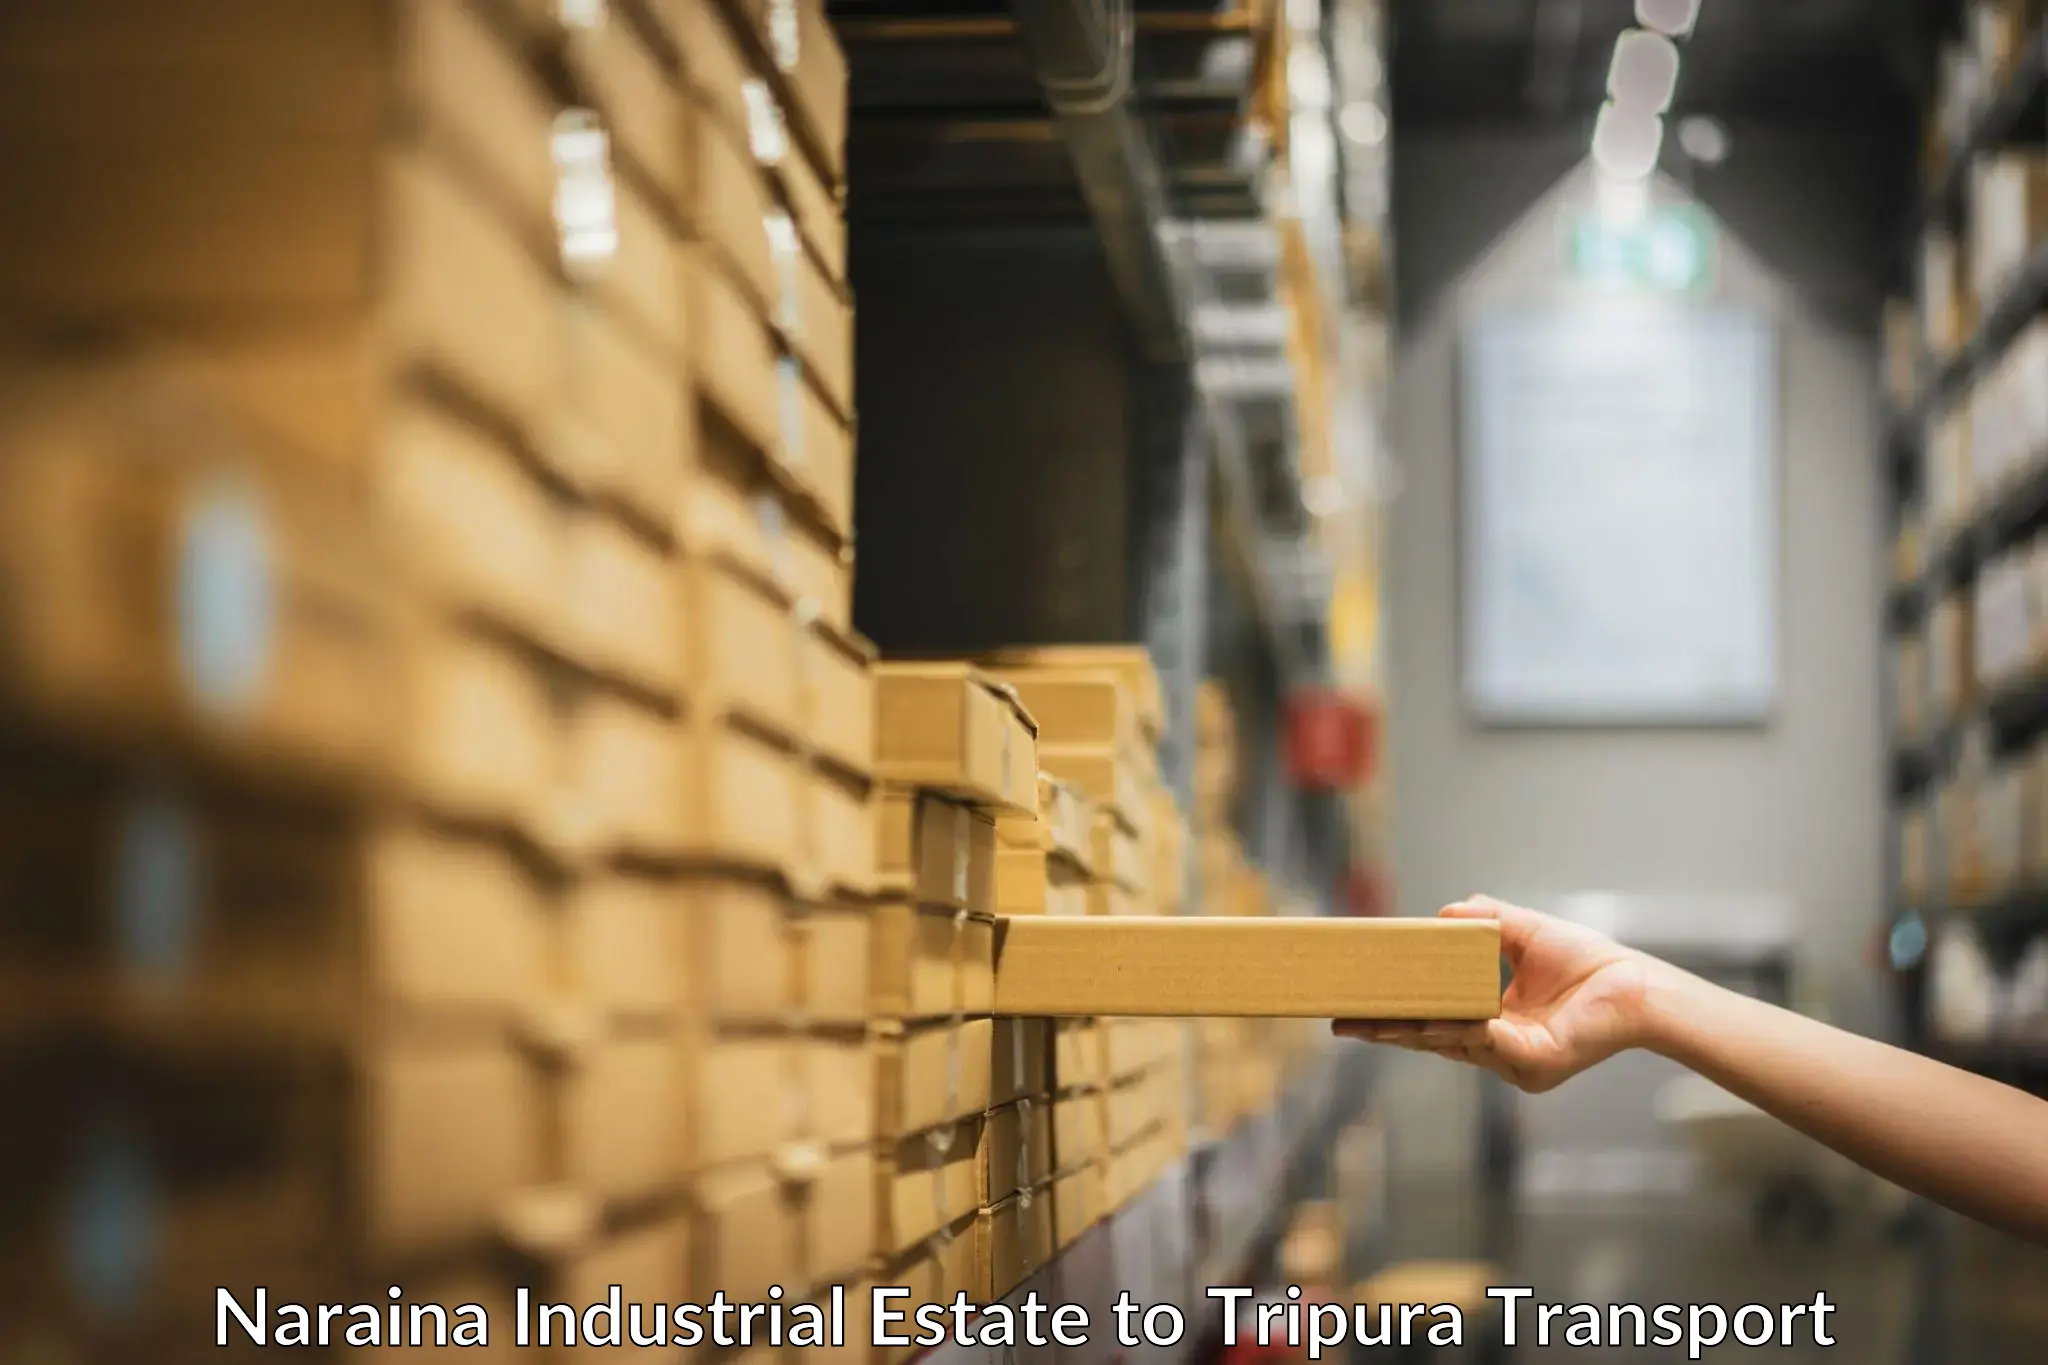 Furniture transport service Naraina Industrial Estate to Tripura